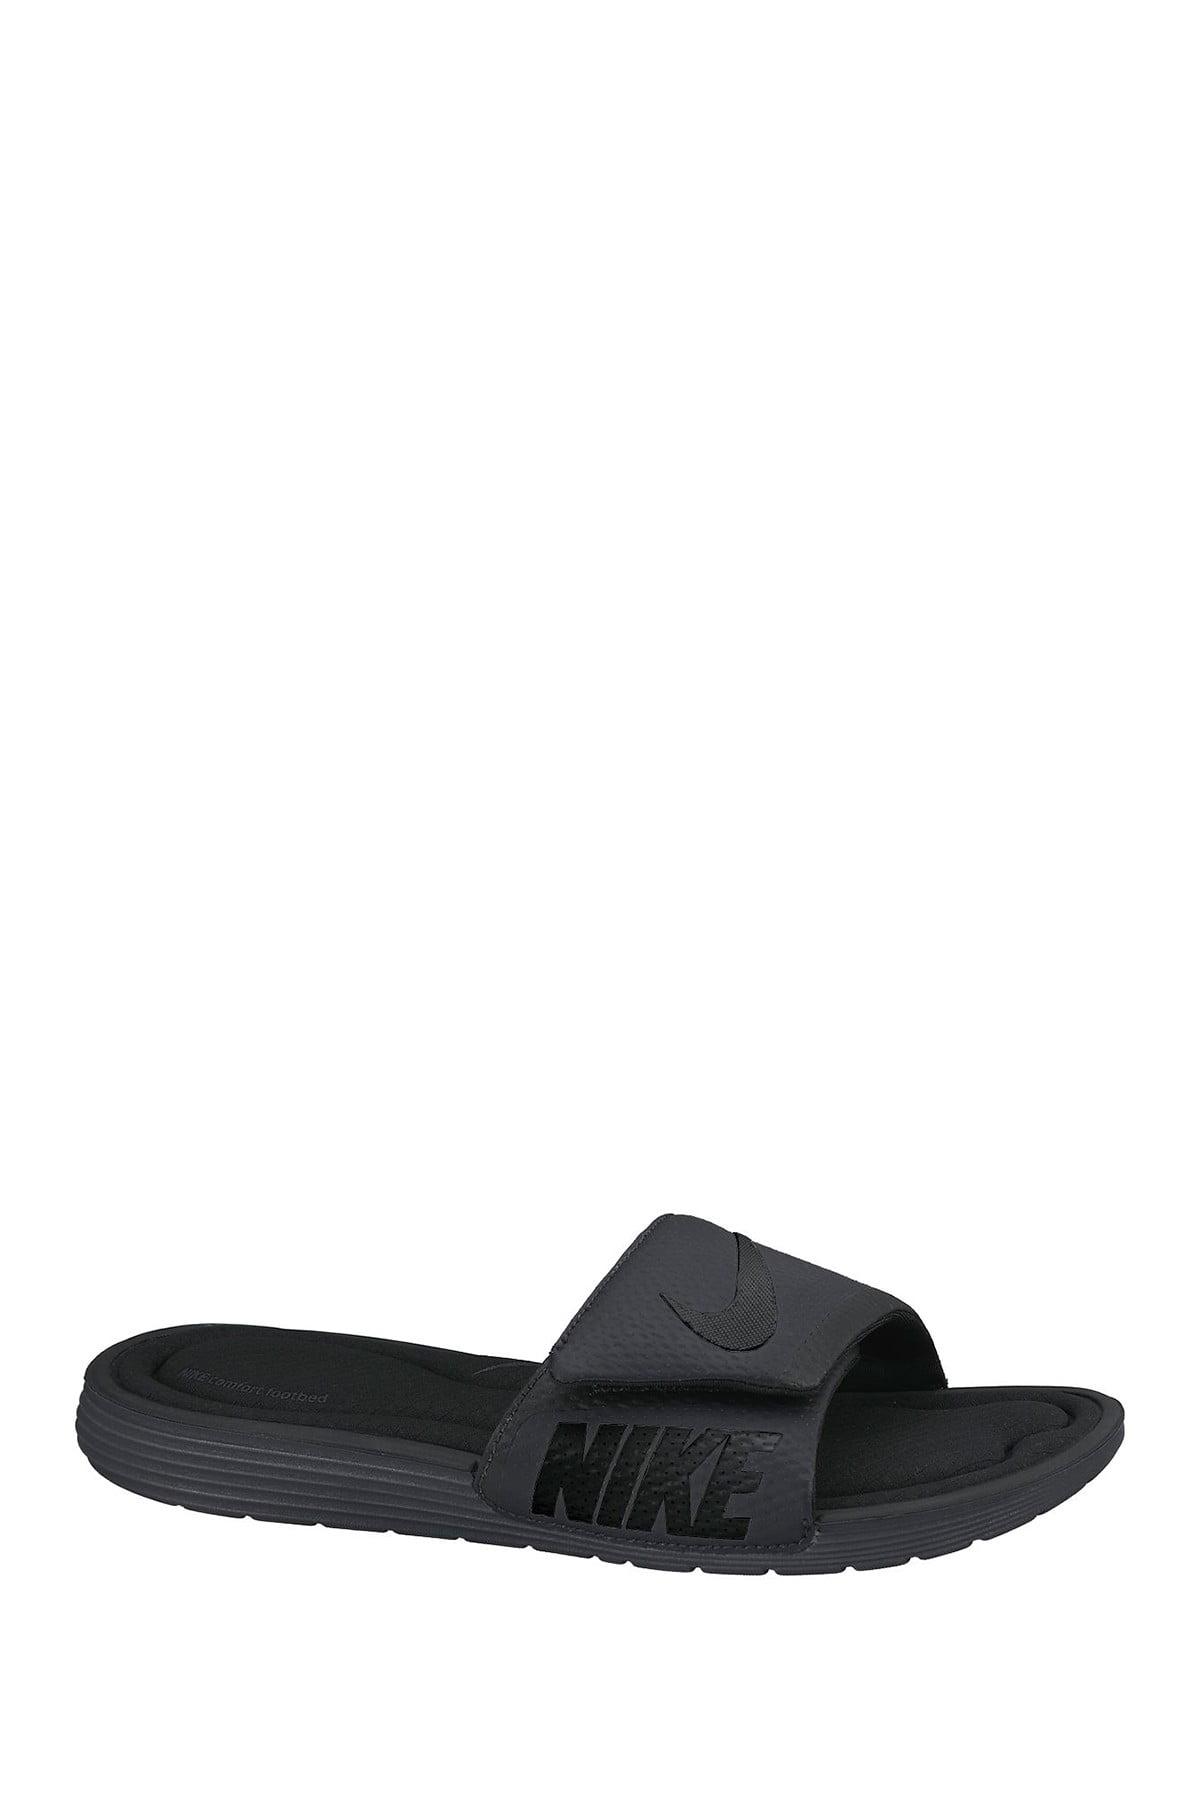 nike men's solarsoft comfort slide sandal stores